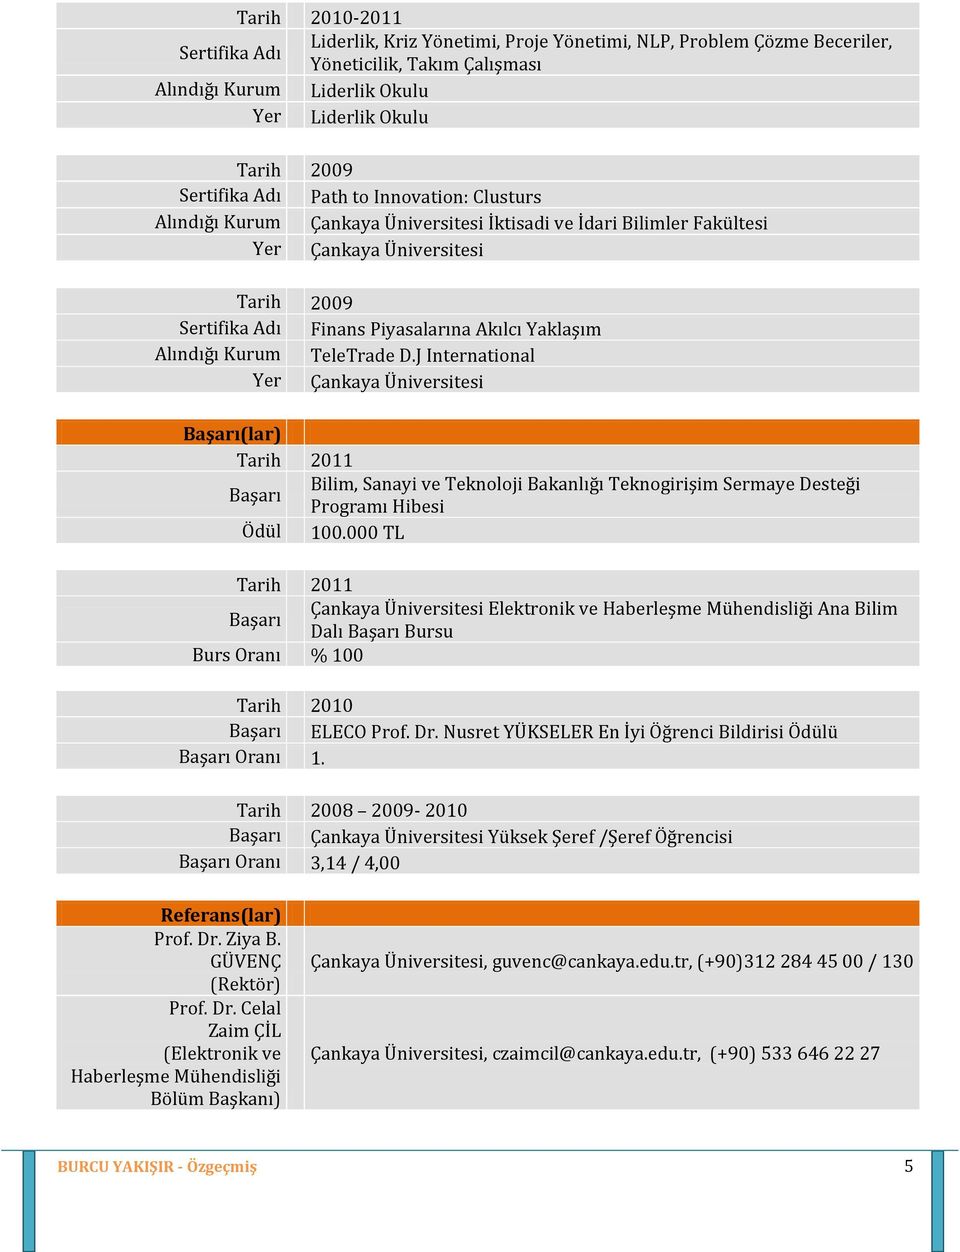 Alındığı Kurum TeleTrade D.J International Yer Çankaya Üniversitesi Başarı(lar) Tarih 2011 Başarı Bilim, Sanayi ve Teknoloji Bakanlığı Teknogirişim Sermaye Desteği Programı Hibesi Ödül 100.